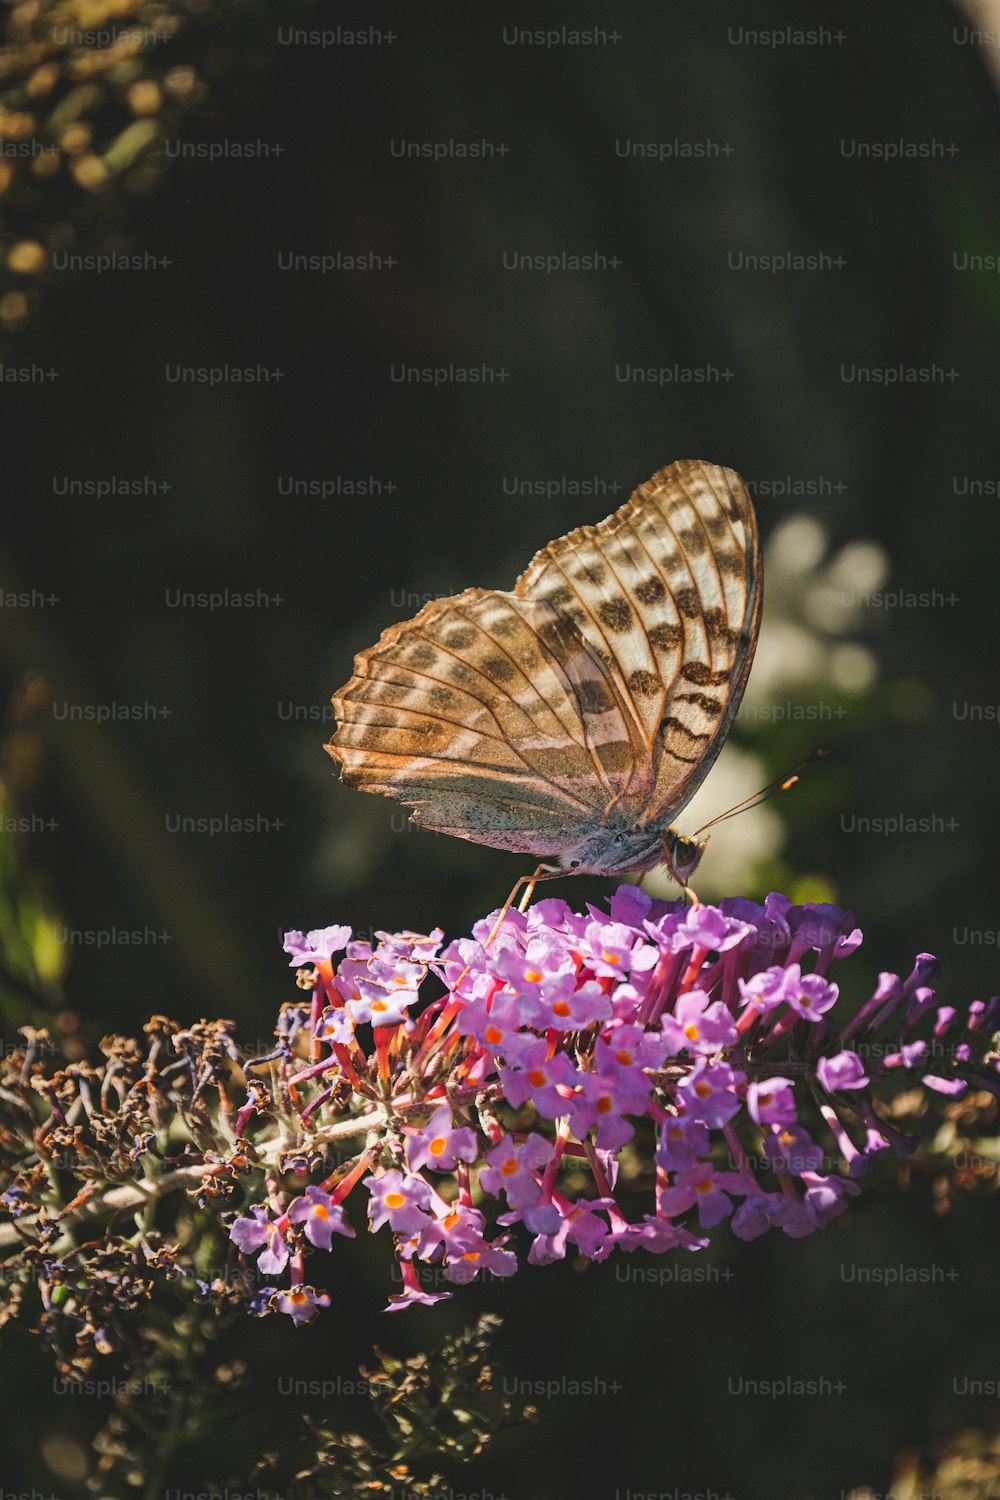 보라색 꽃 위에 앉아 있는 갈색 나비